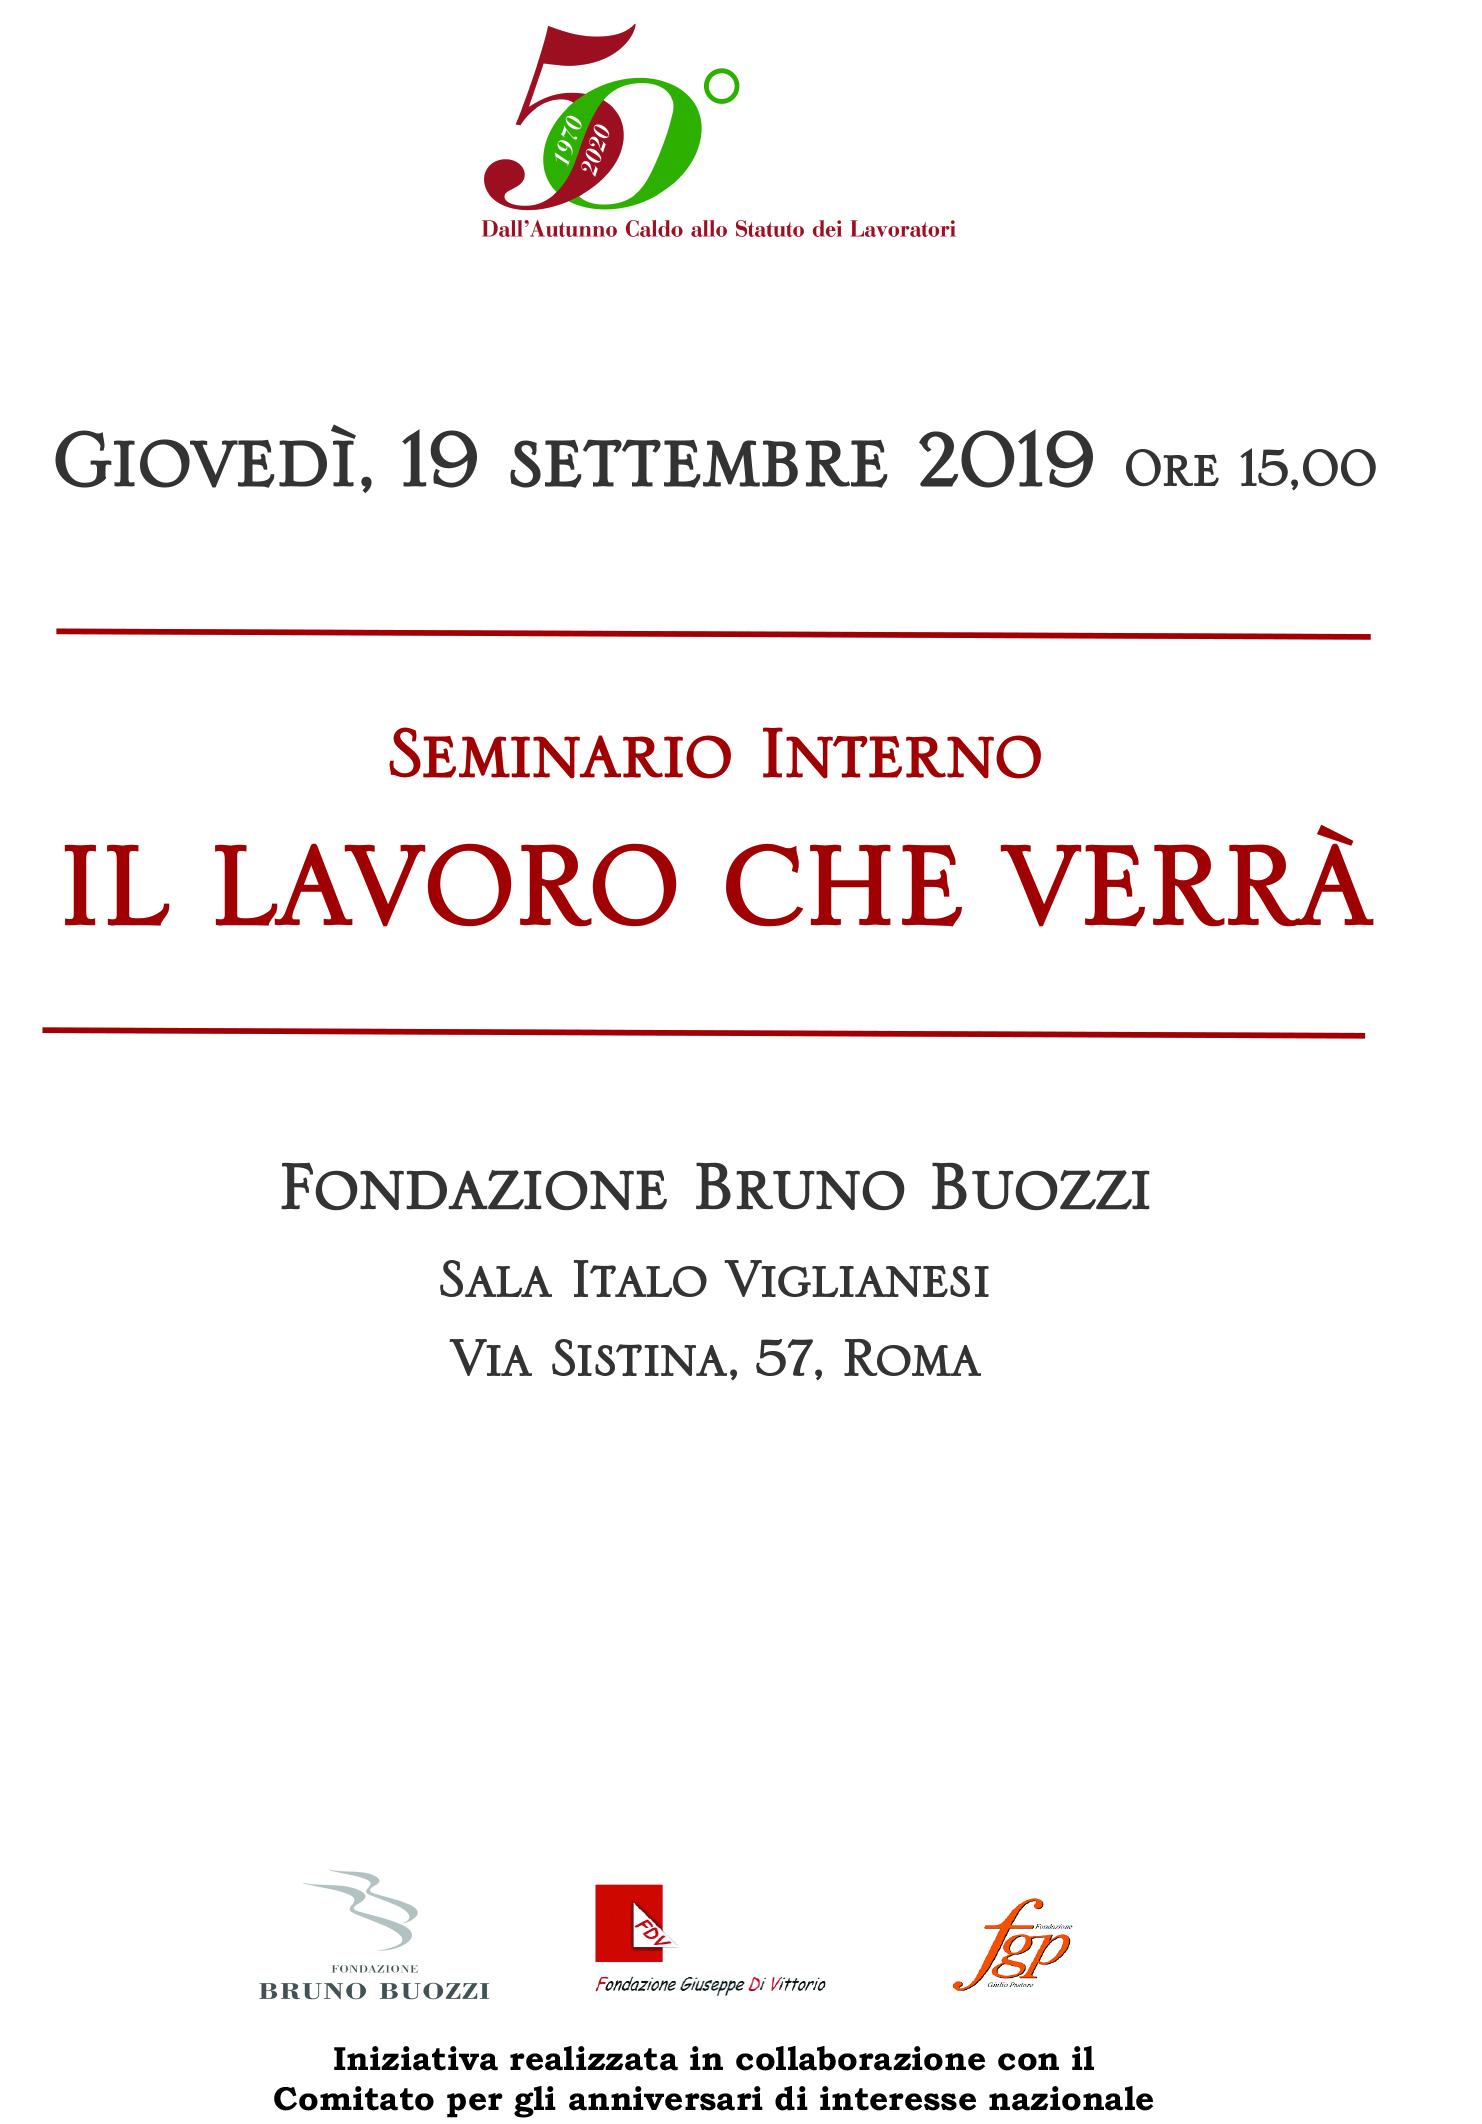 Seminario Interno. Roma 19 settembre 2019. Fondazione Bruno Buozzi, sala Italo Viglianesi.